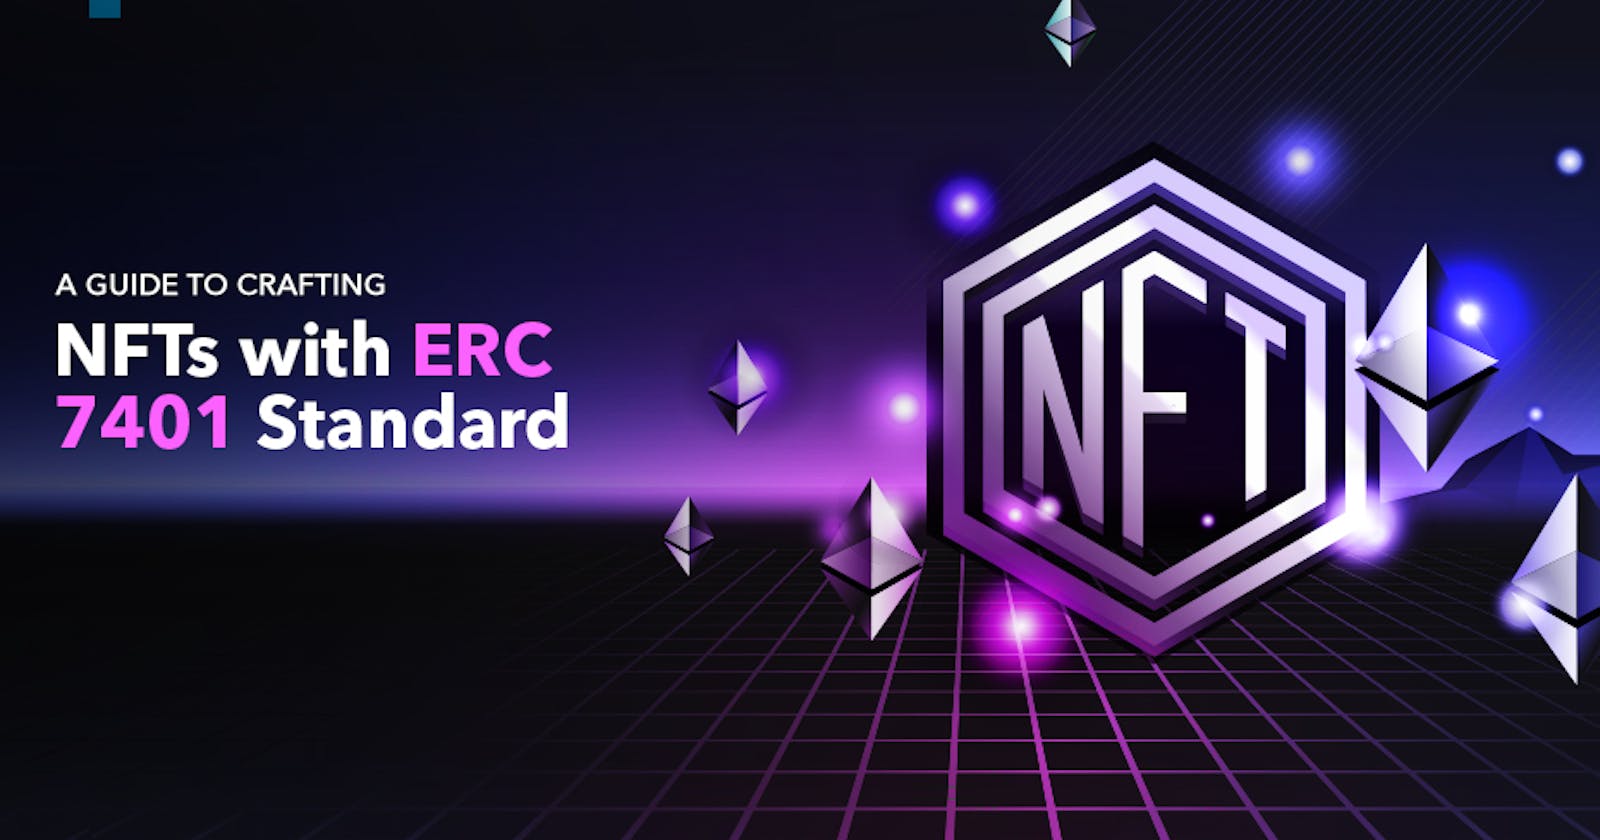 How to Make an NFT on ERC 7401 Standard?